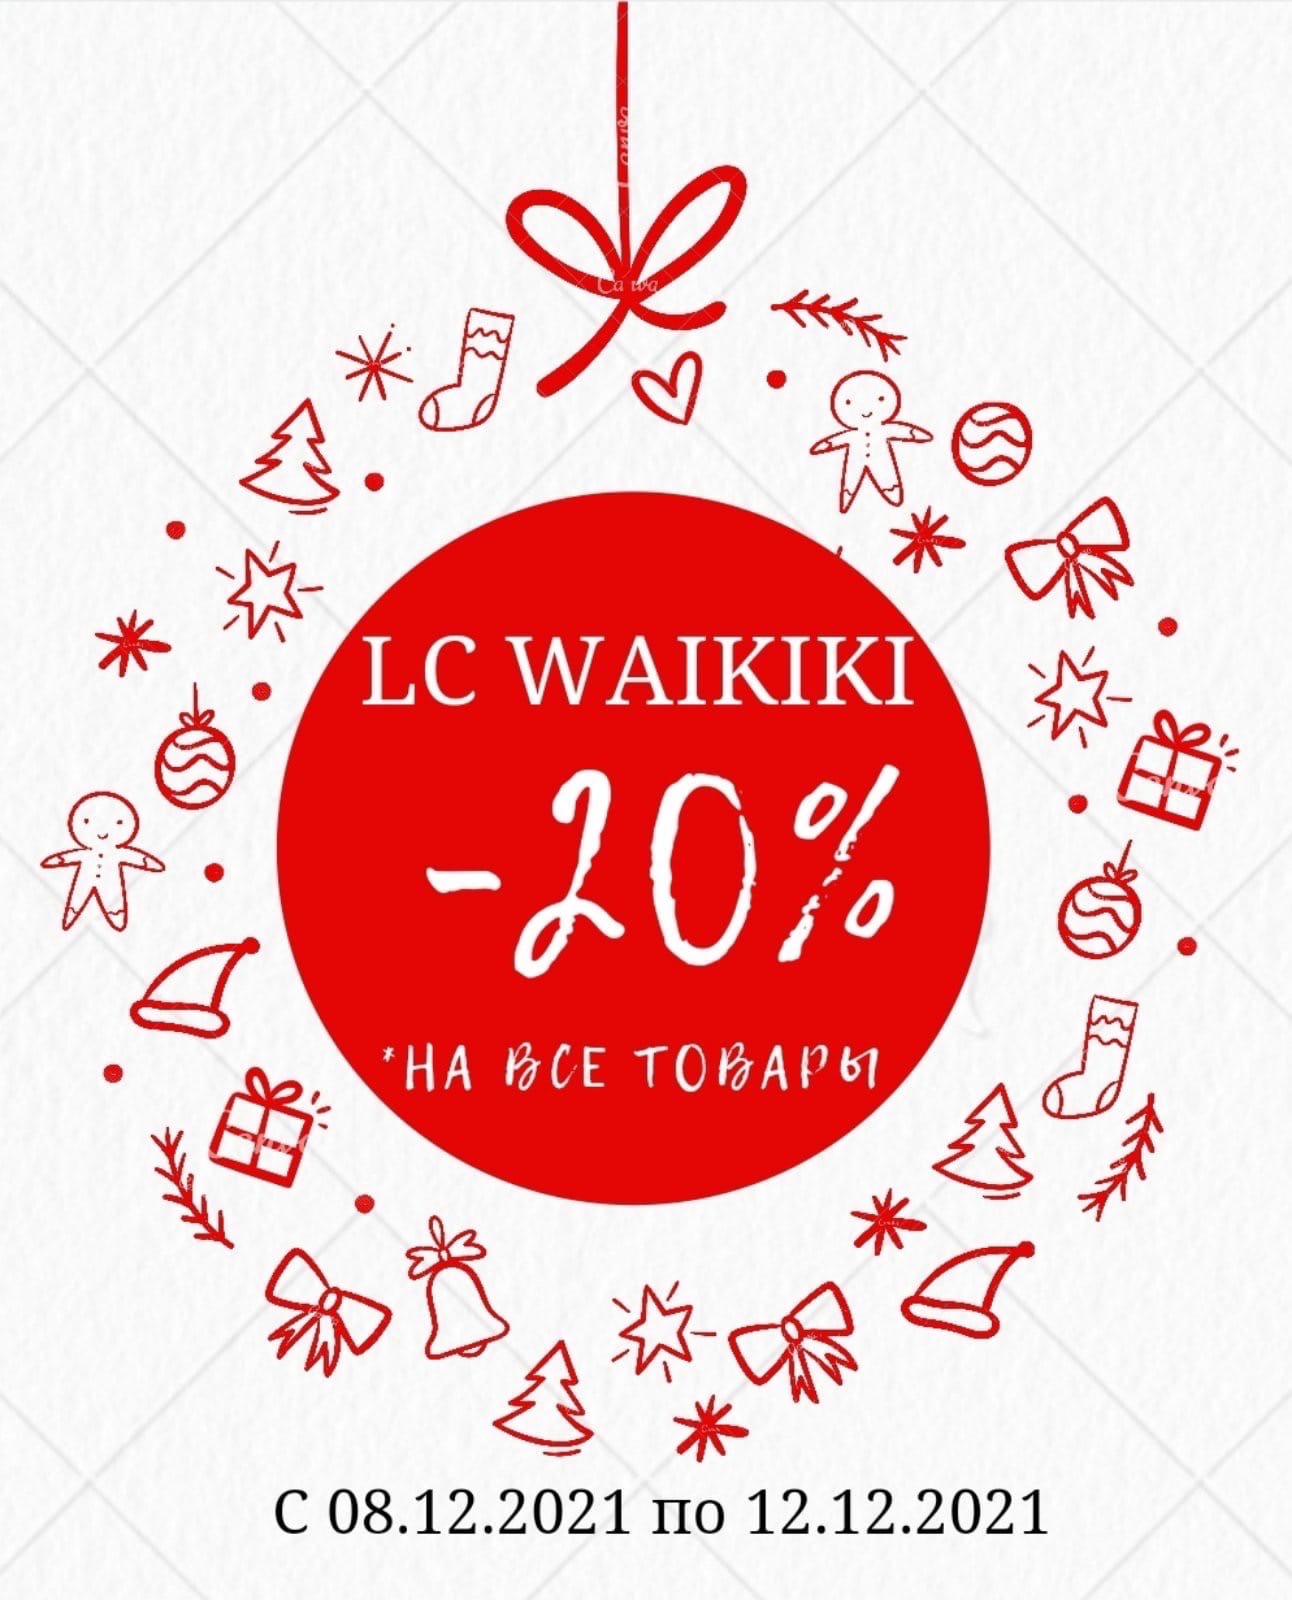 LC WAIKIKI начинает серию предновогодних распродаж!